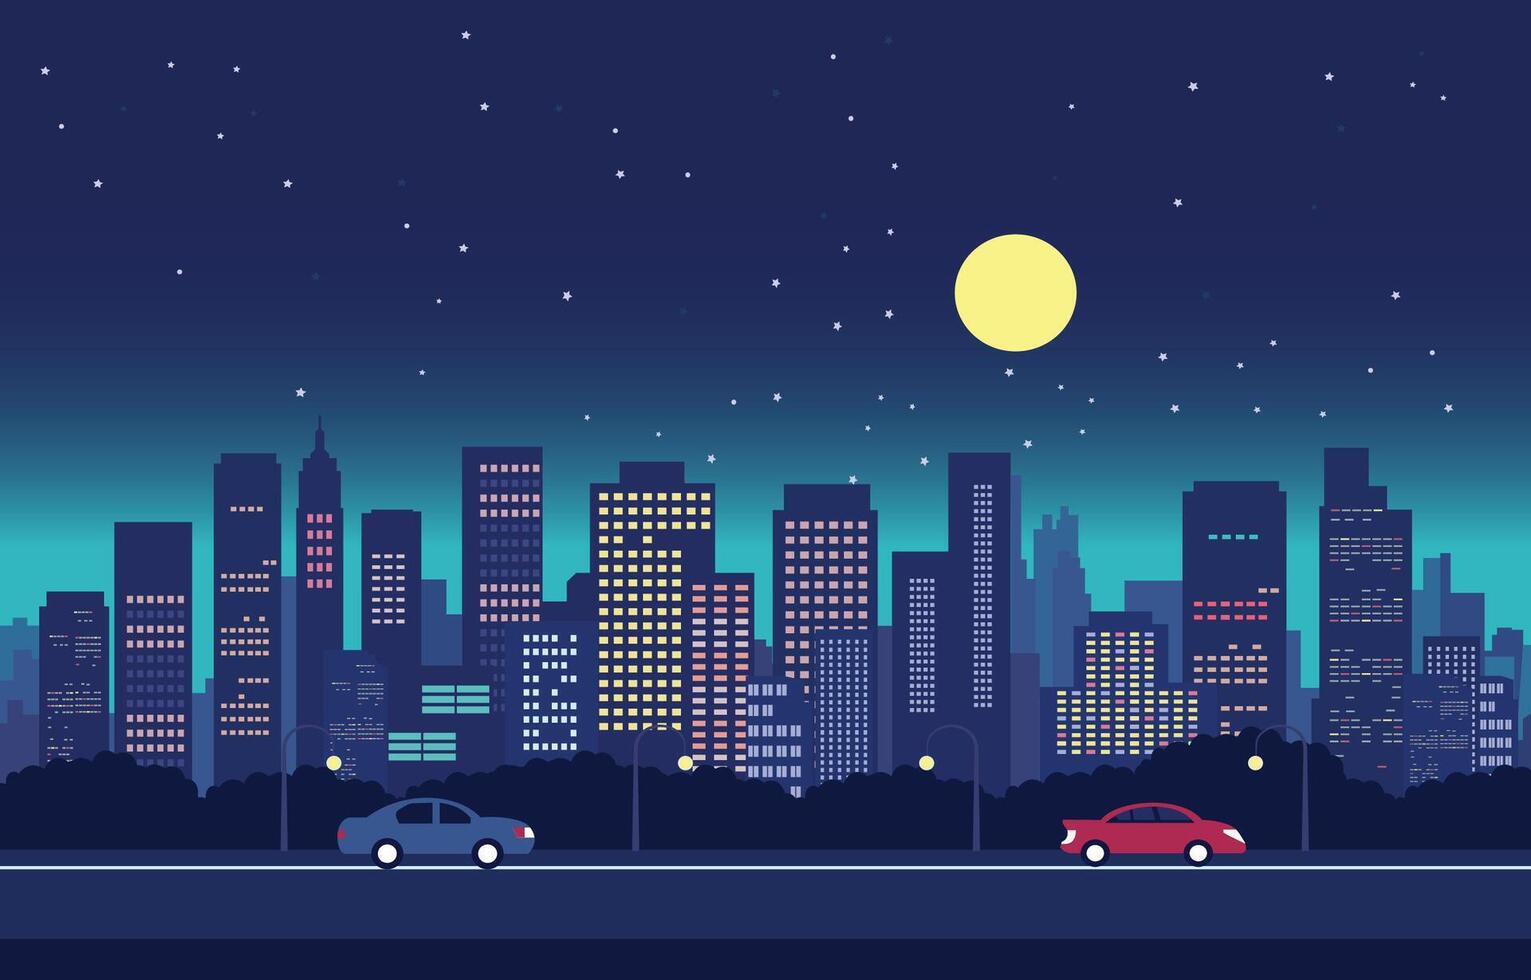 trafik väg i stad på natt med full måne platt design illustration vektor